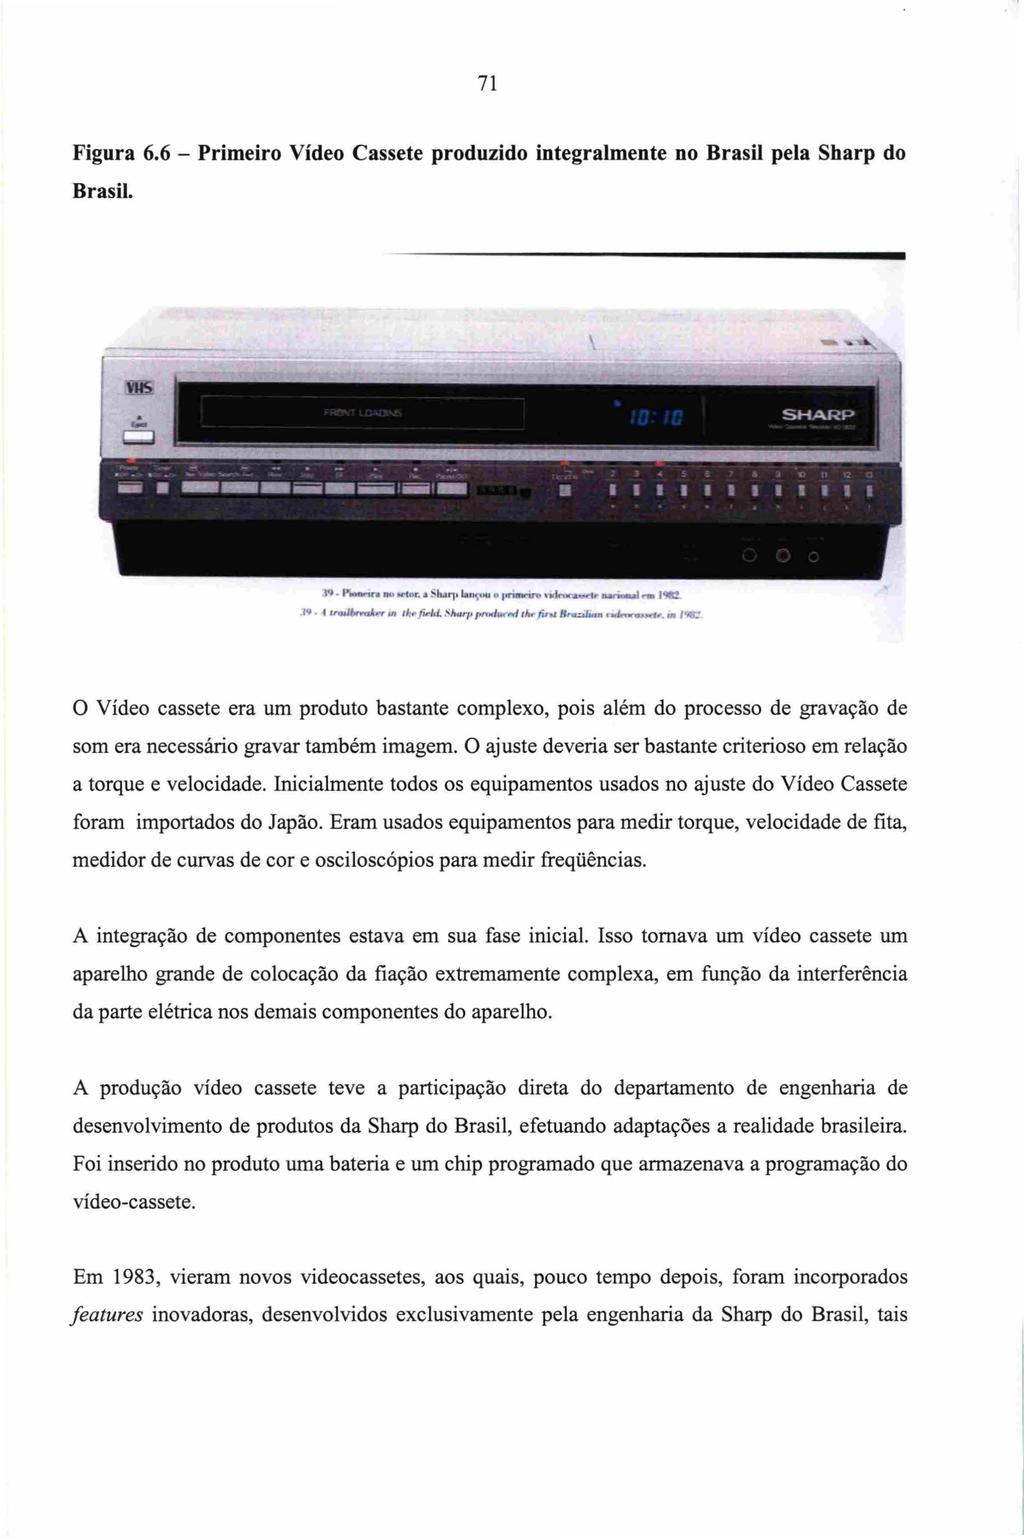 71 Figura 6.6 - Primeiro Vídeo Cassete produzido integralmente no Brasil pela Sharp do Brasil. -- - - - - - - SHAI~P 39. I"...-.:n DO {lr. a ~lu." lan I' JK'UD'*11't" \'1(~:w:a~... ~... 19tt!. N.